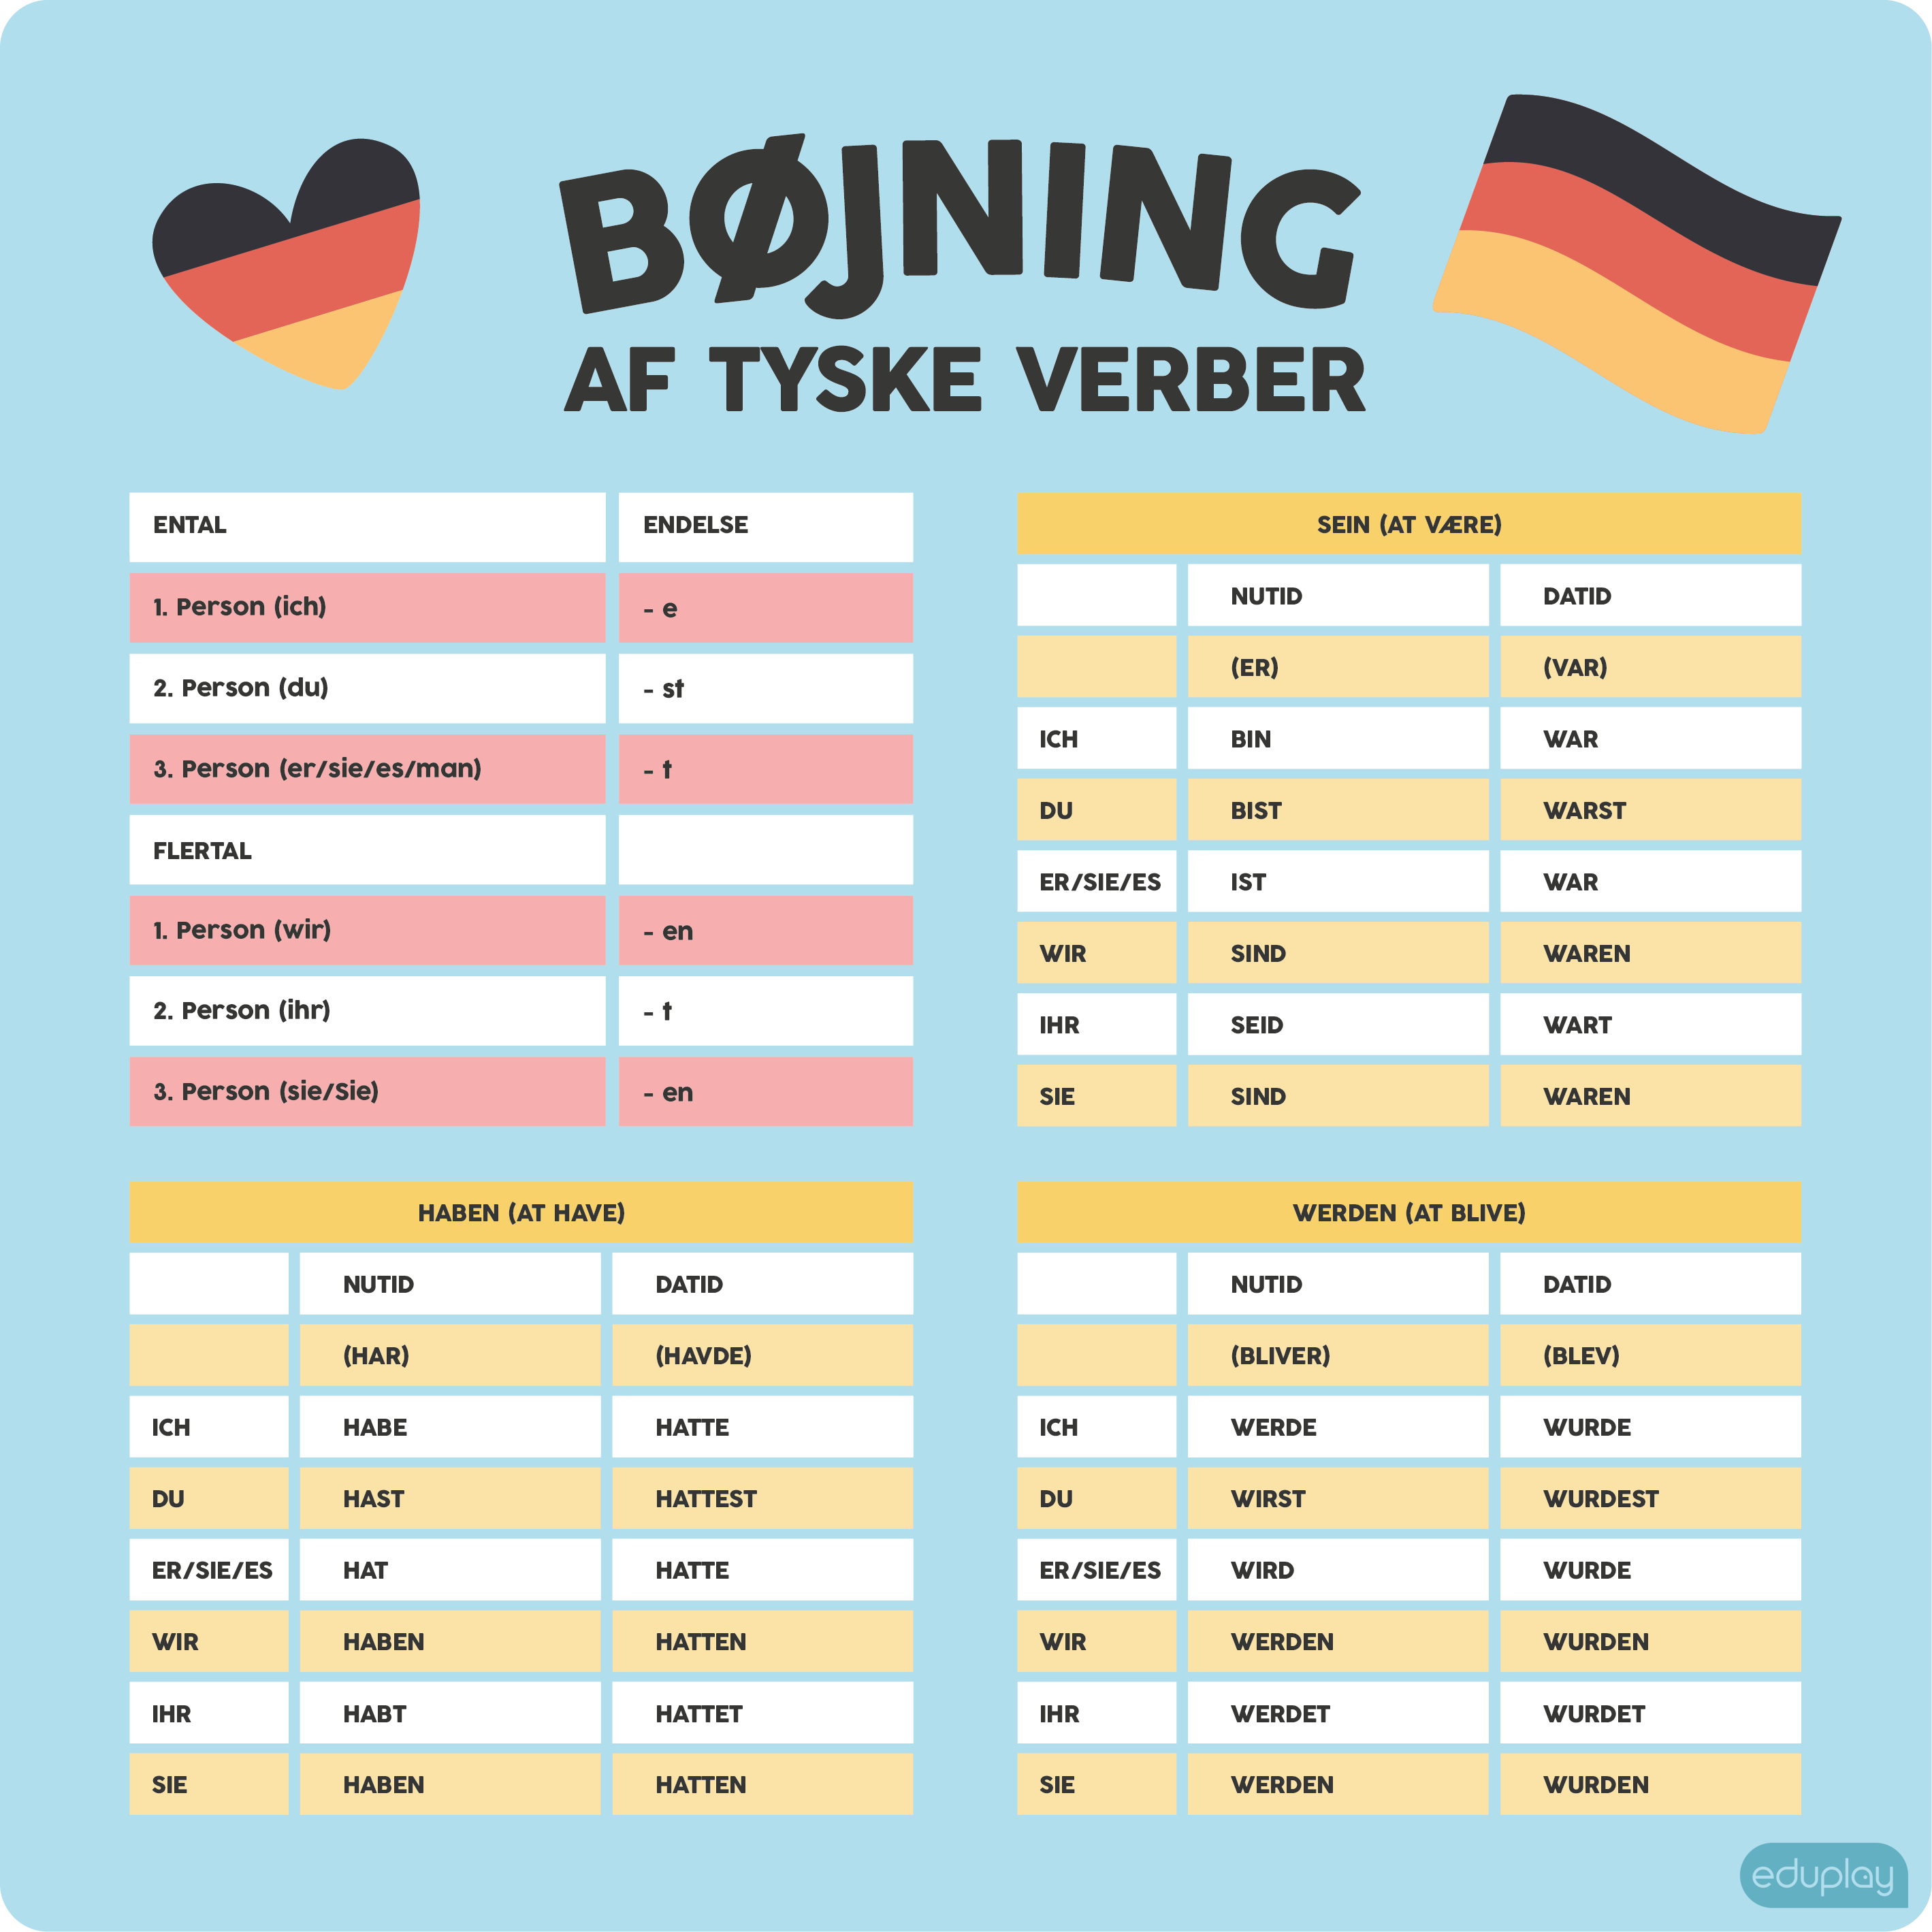 Bjning af tyske verber